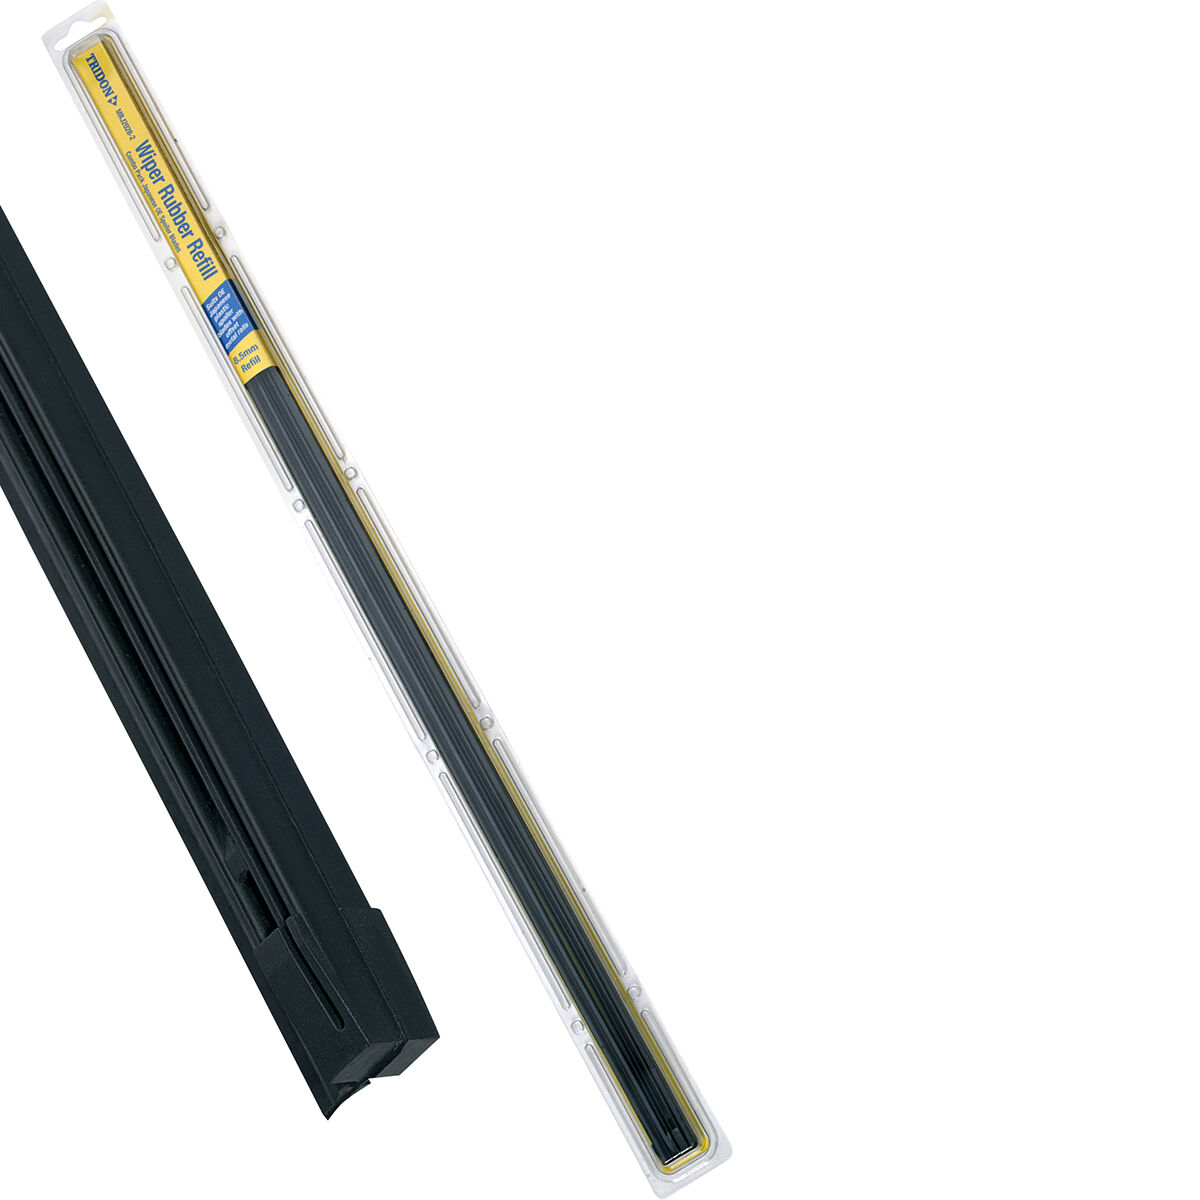 Tridon Wiper Refills - Metal Rail Wide Back Suits 8.5mm, MRJ2028-2, , scaau_hi-res